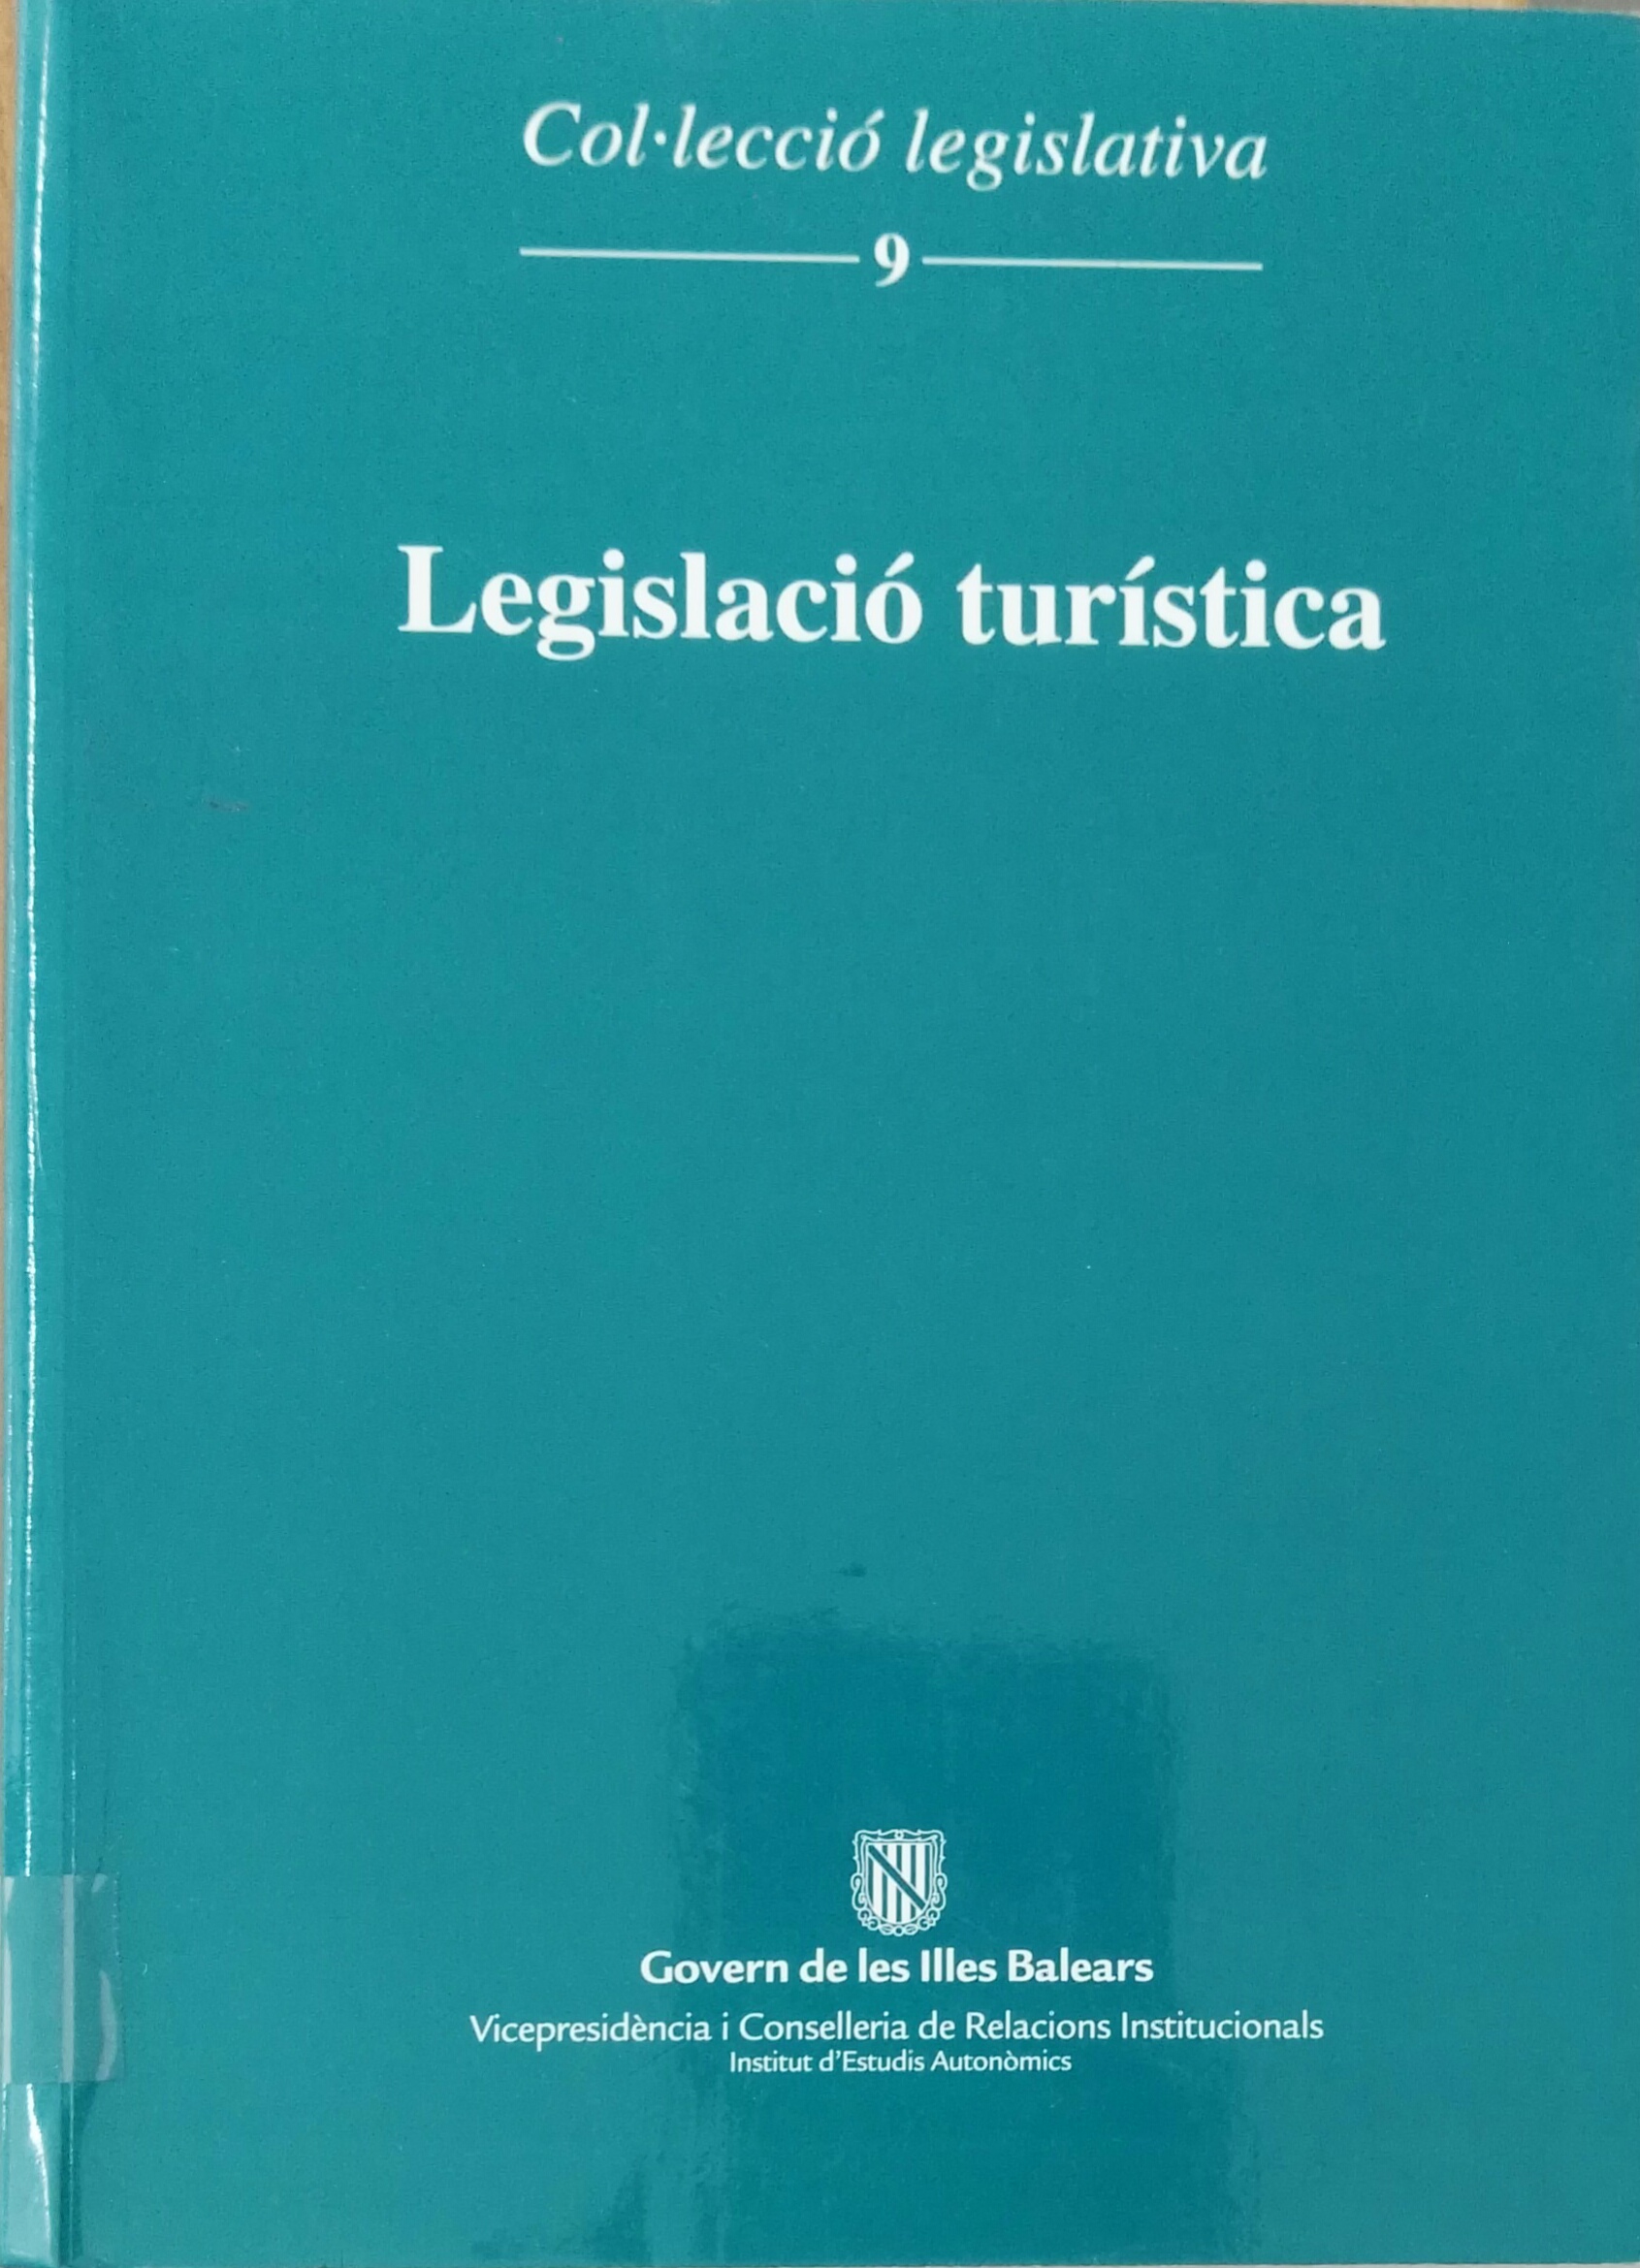 Imagen de portada del libro Legislació turística